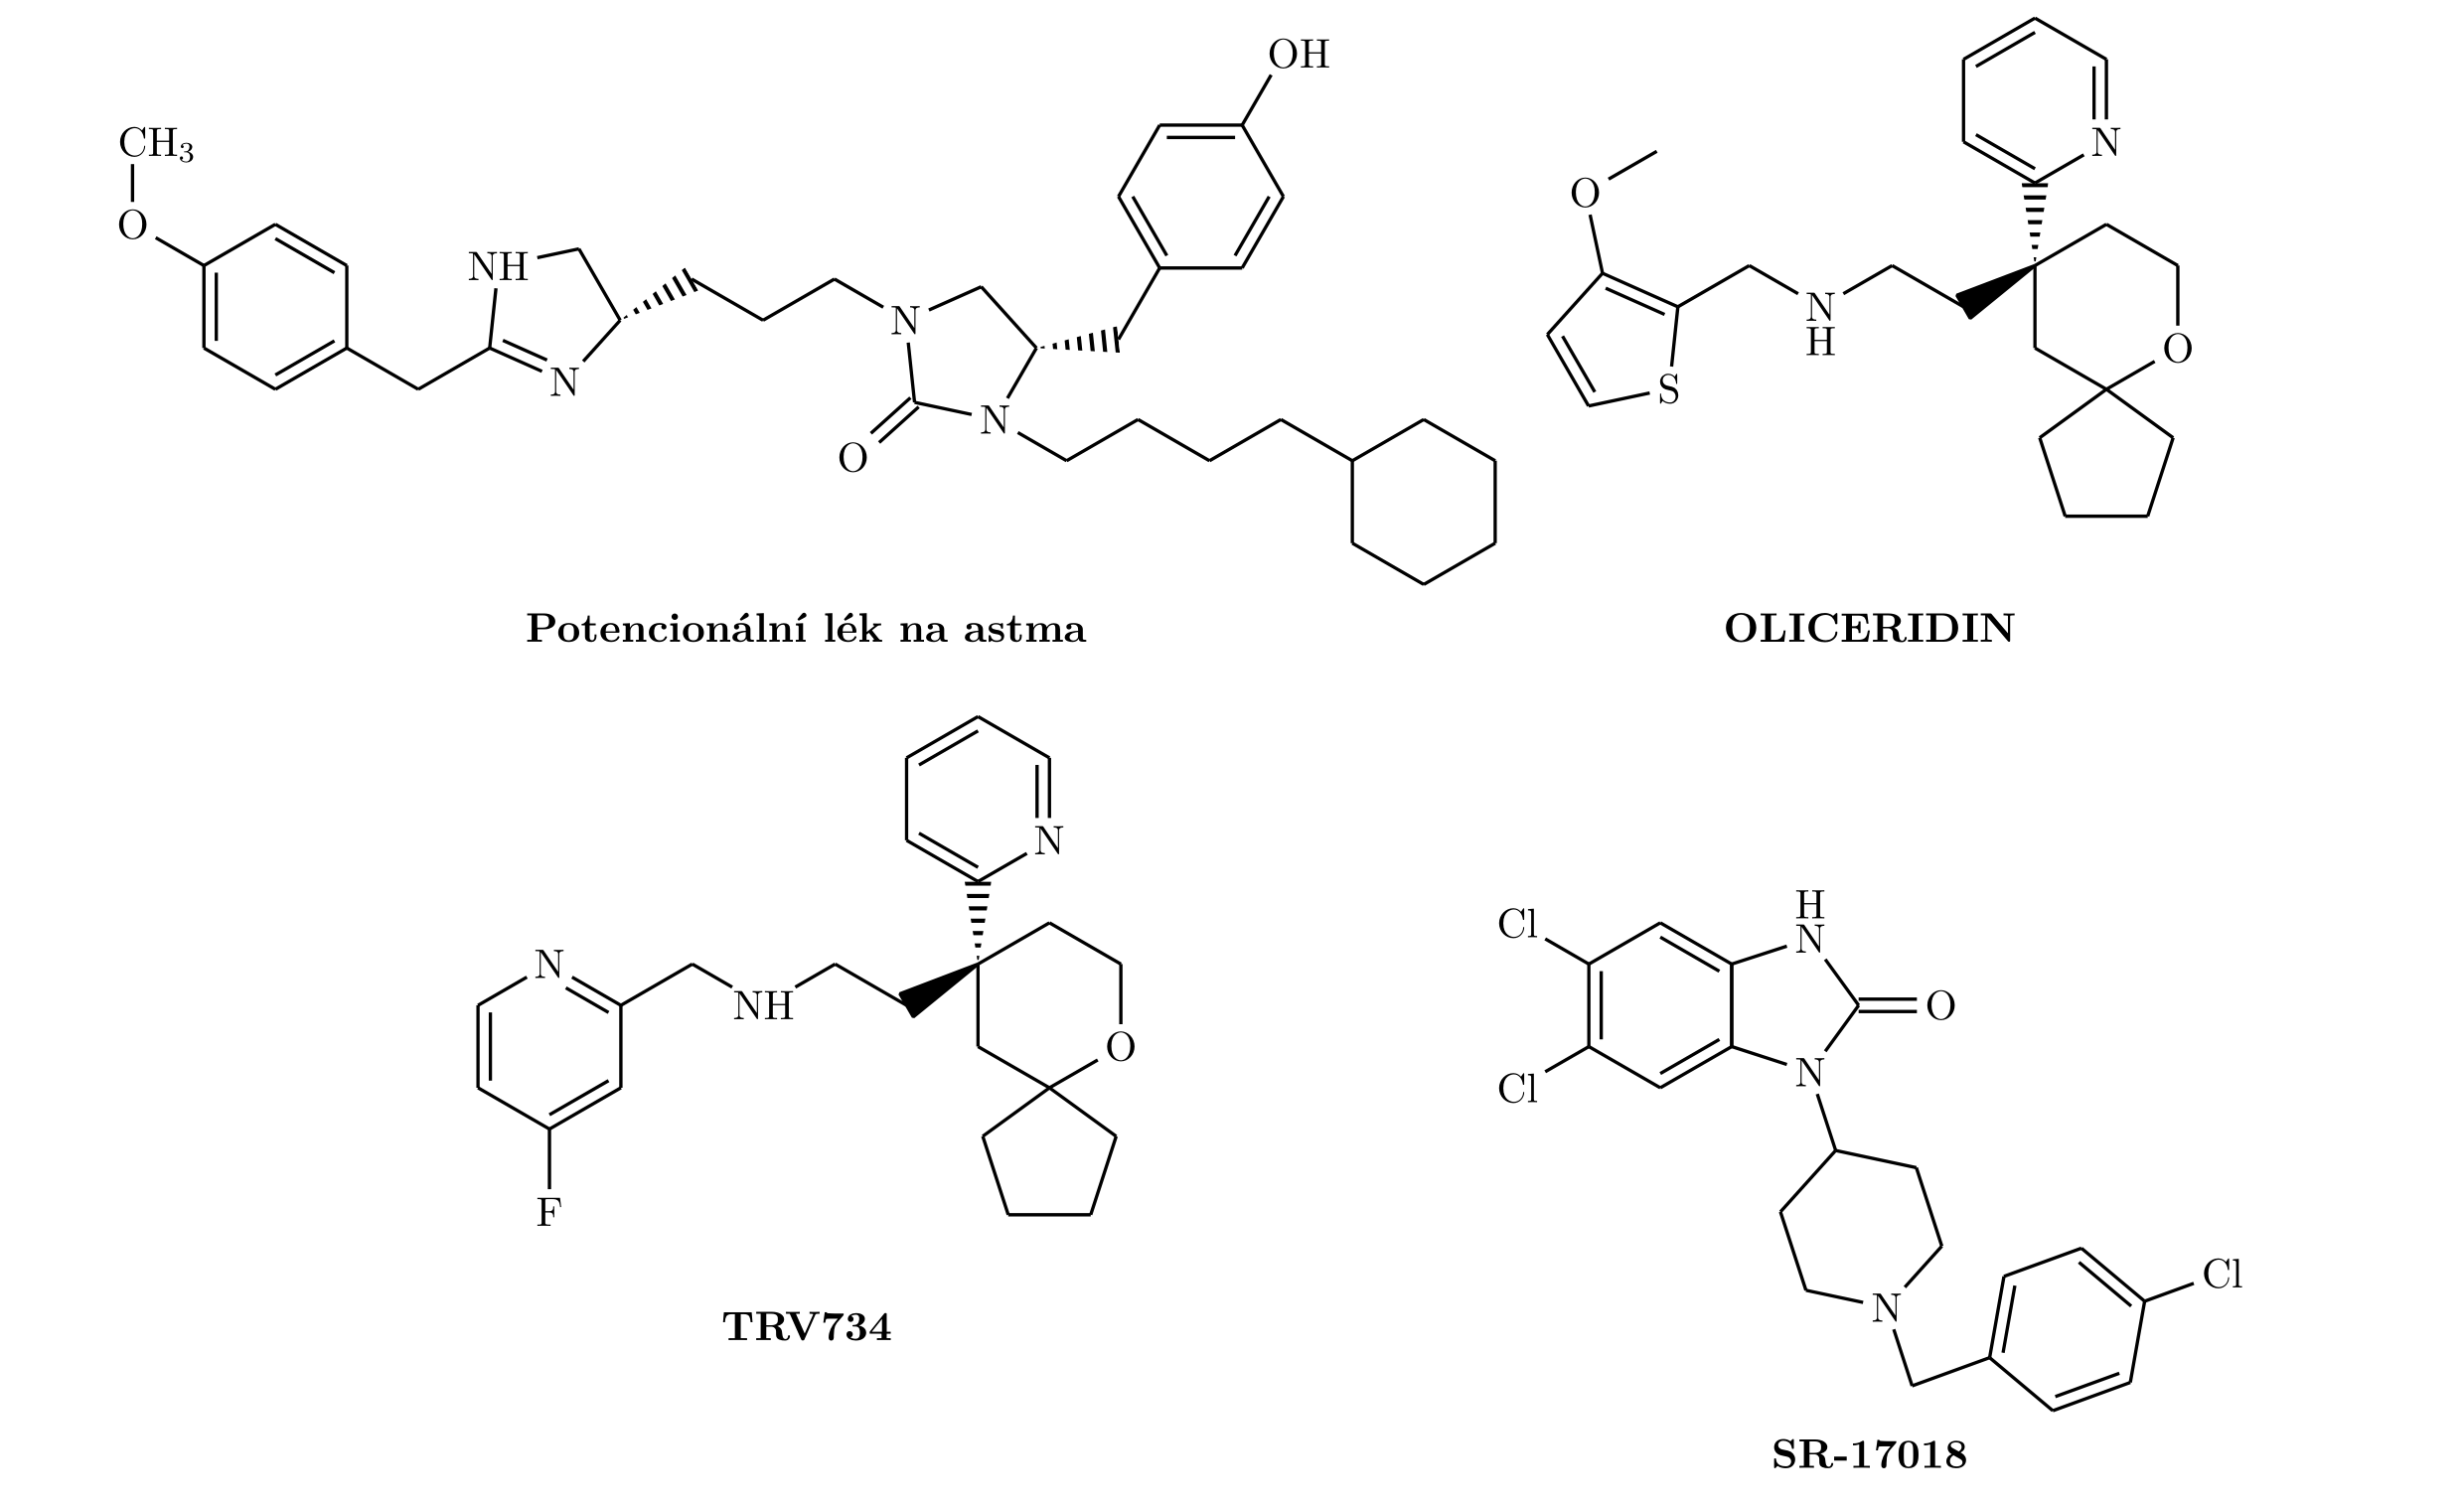 Struktura vybraných funkčně selektivních agonistů. Zatímco antiastmaticky aktivní sloučenina a opioid SR-17018 jsou ryze experimentální látky, tak oliceridin byl první schválený opioid cíleně vyvinutý k preferenci signální dráhy G proteinu. Dále zobr